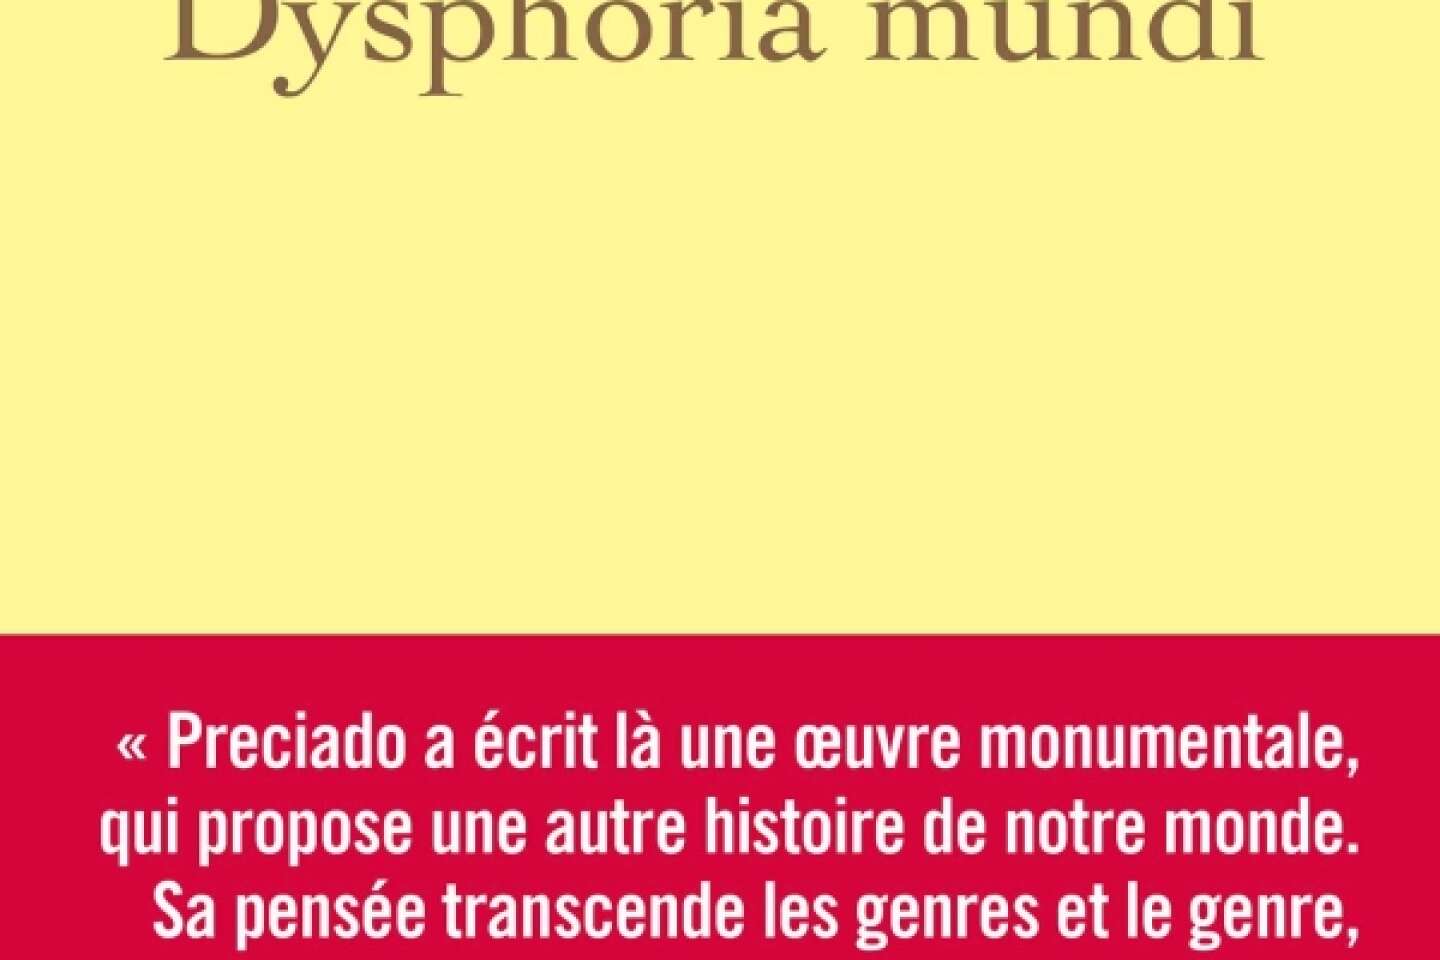 « Dysphoria Mundi » : le monde est en transition